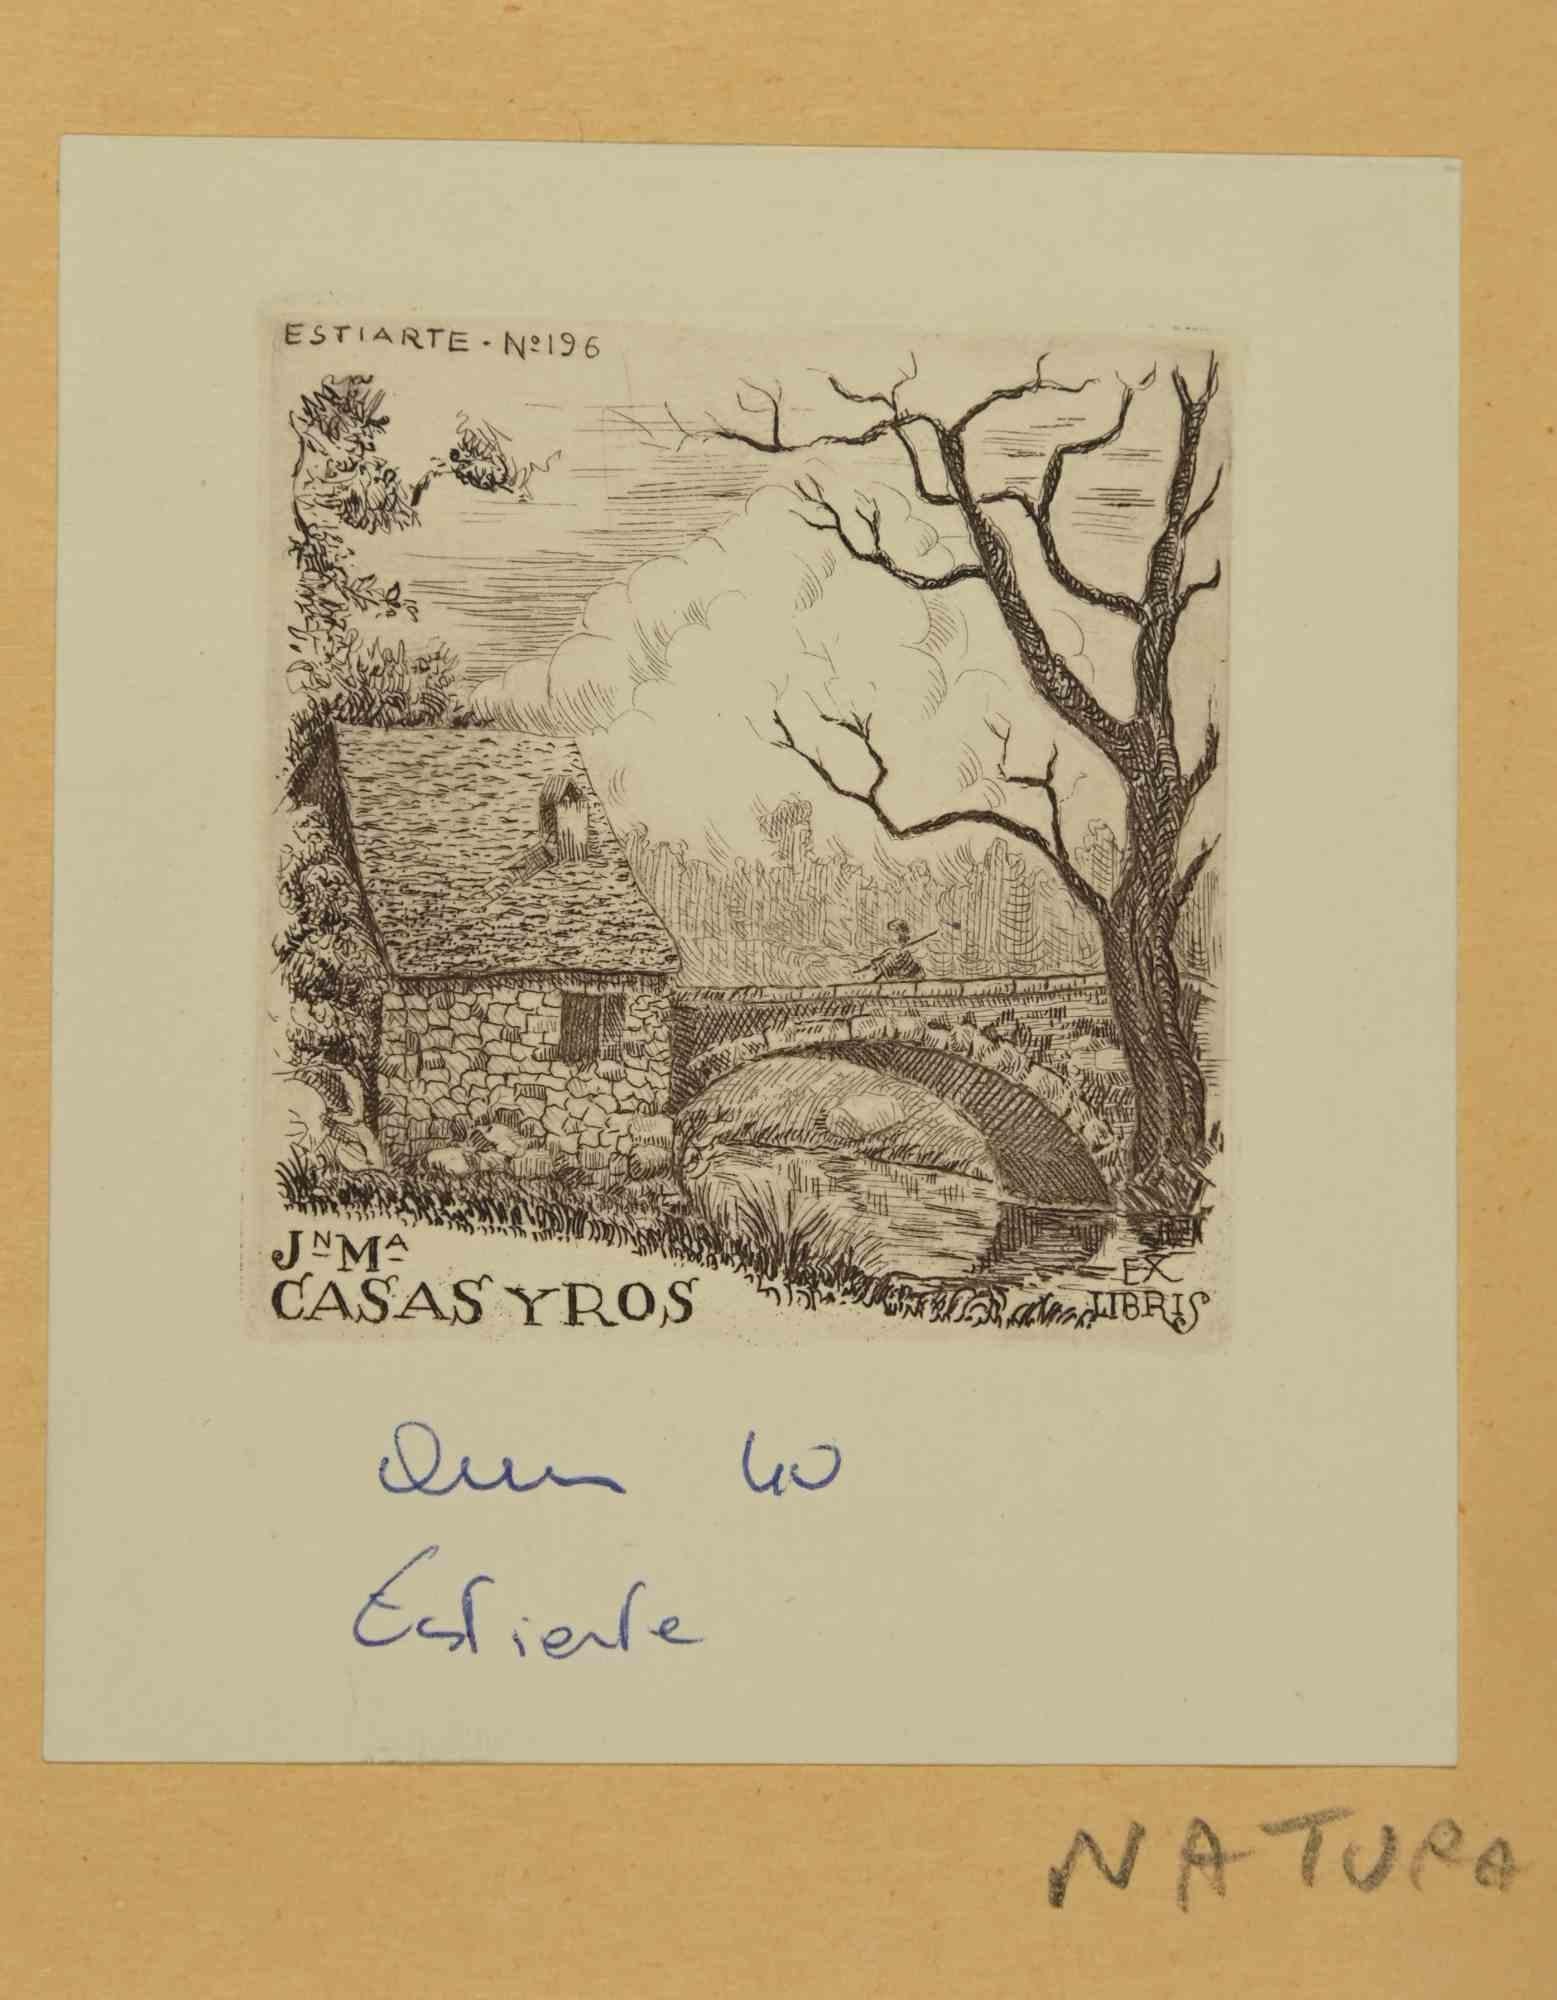 Ex-Libris - J M Casas y Ros ist ein Kunstwerk des Künstlers Juan Estiarte aus den 1940er Jahren. 

Holzschnitt auf Elfenbeinpapier. Signiert auf der Platte oben links. 

Das Werk ist auf farbigen Karton geklebt.

Abmessungen insgesamt: 12x 10